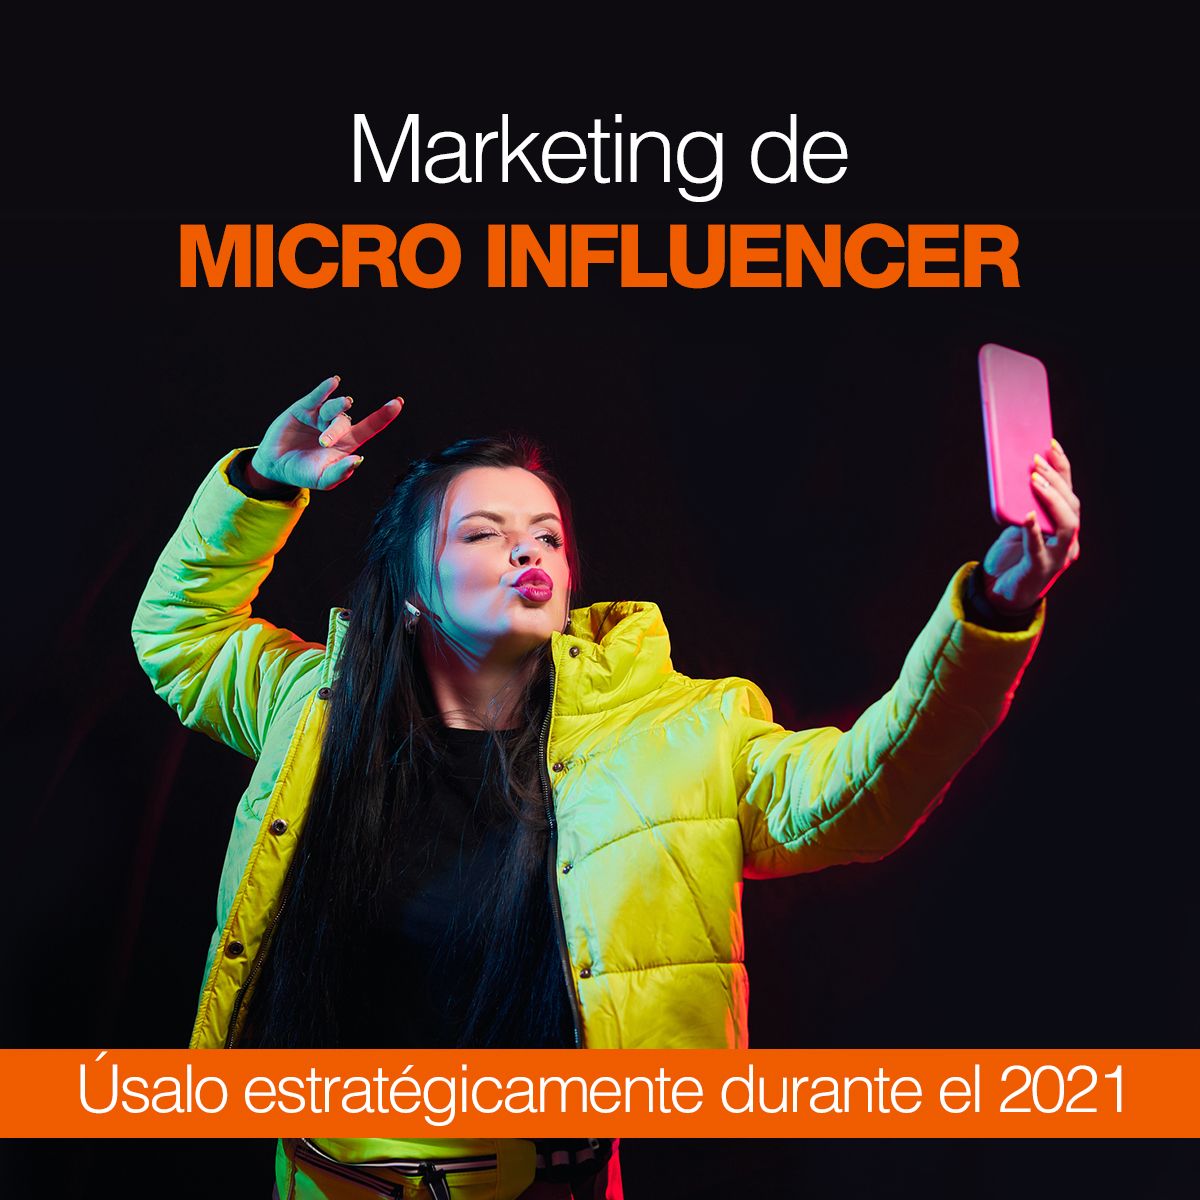 Marketing de micro influencer Úsalo estratégicamente durante el 2021